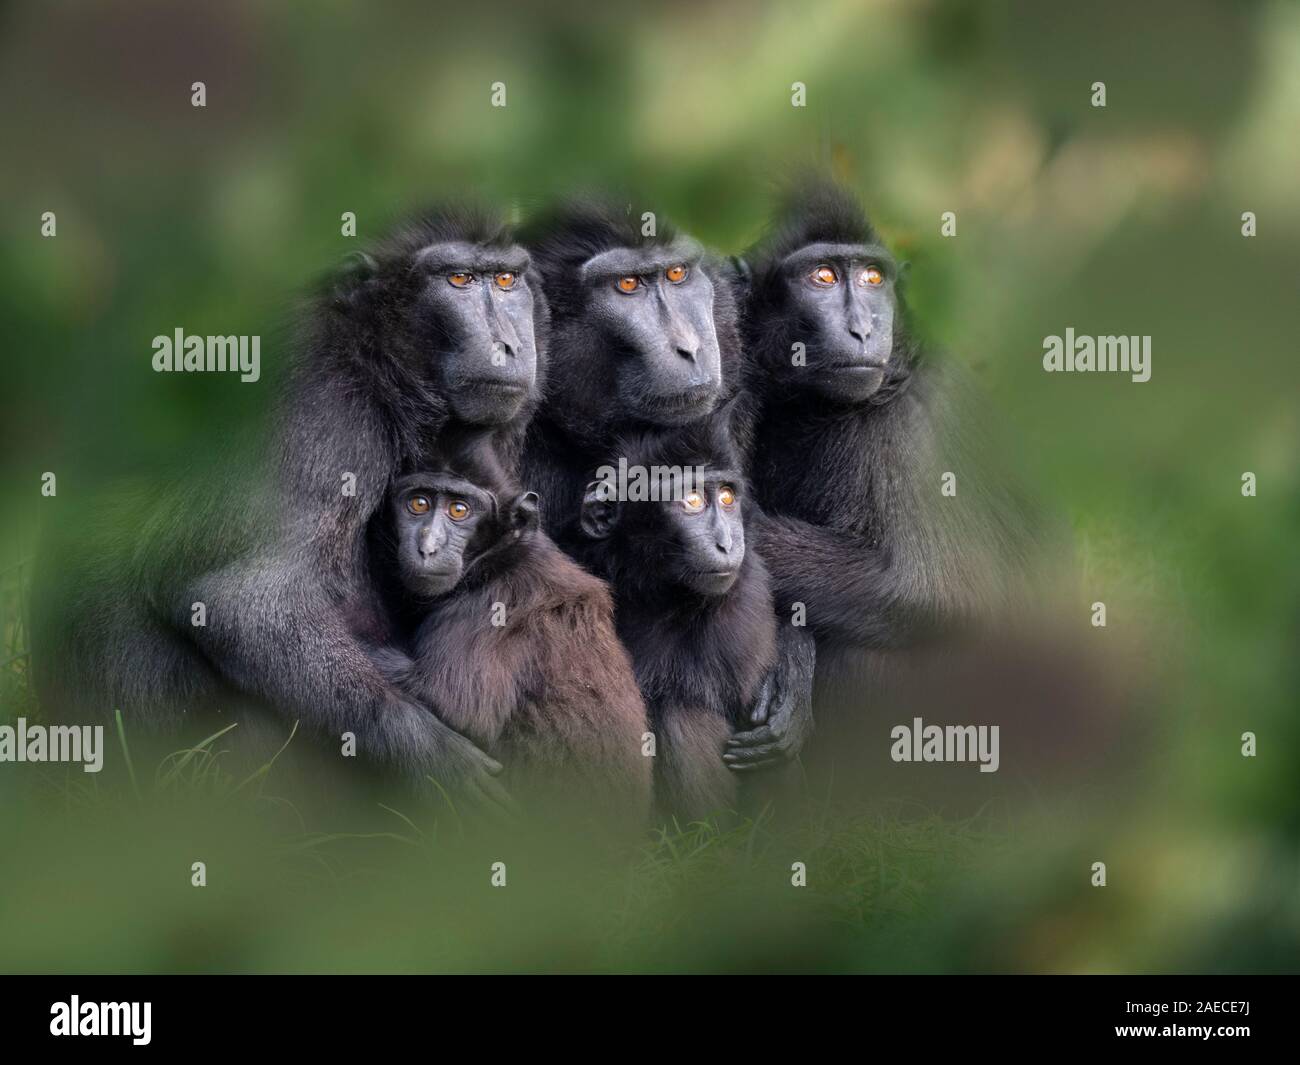 El macaco crestado de Célebes Macaca nigra, también conocido como el negro con cresta, macaco macaco crestado de Célebes, o el mono negro Foto de stock